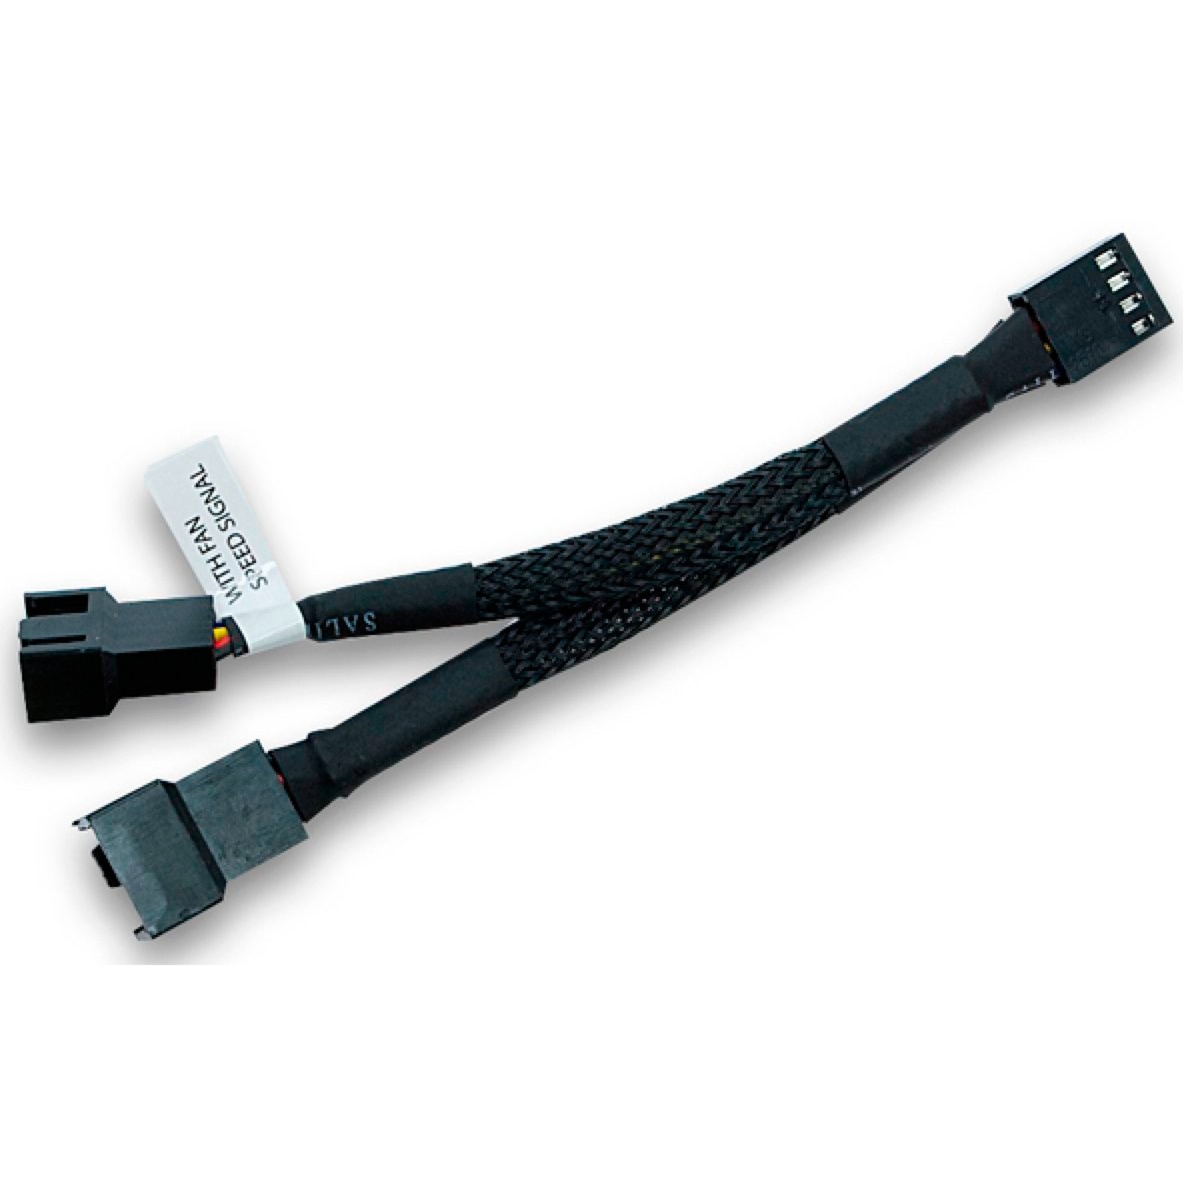 Image of Alternate - Y-Kabel für 4 Pin PWM Lüfter, 10cm online einkaufen bei Alternate